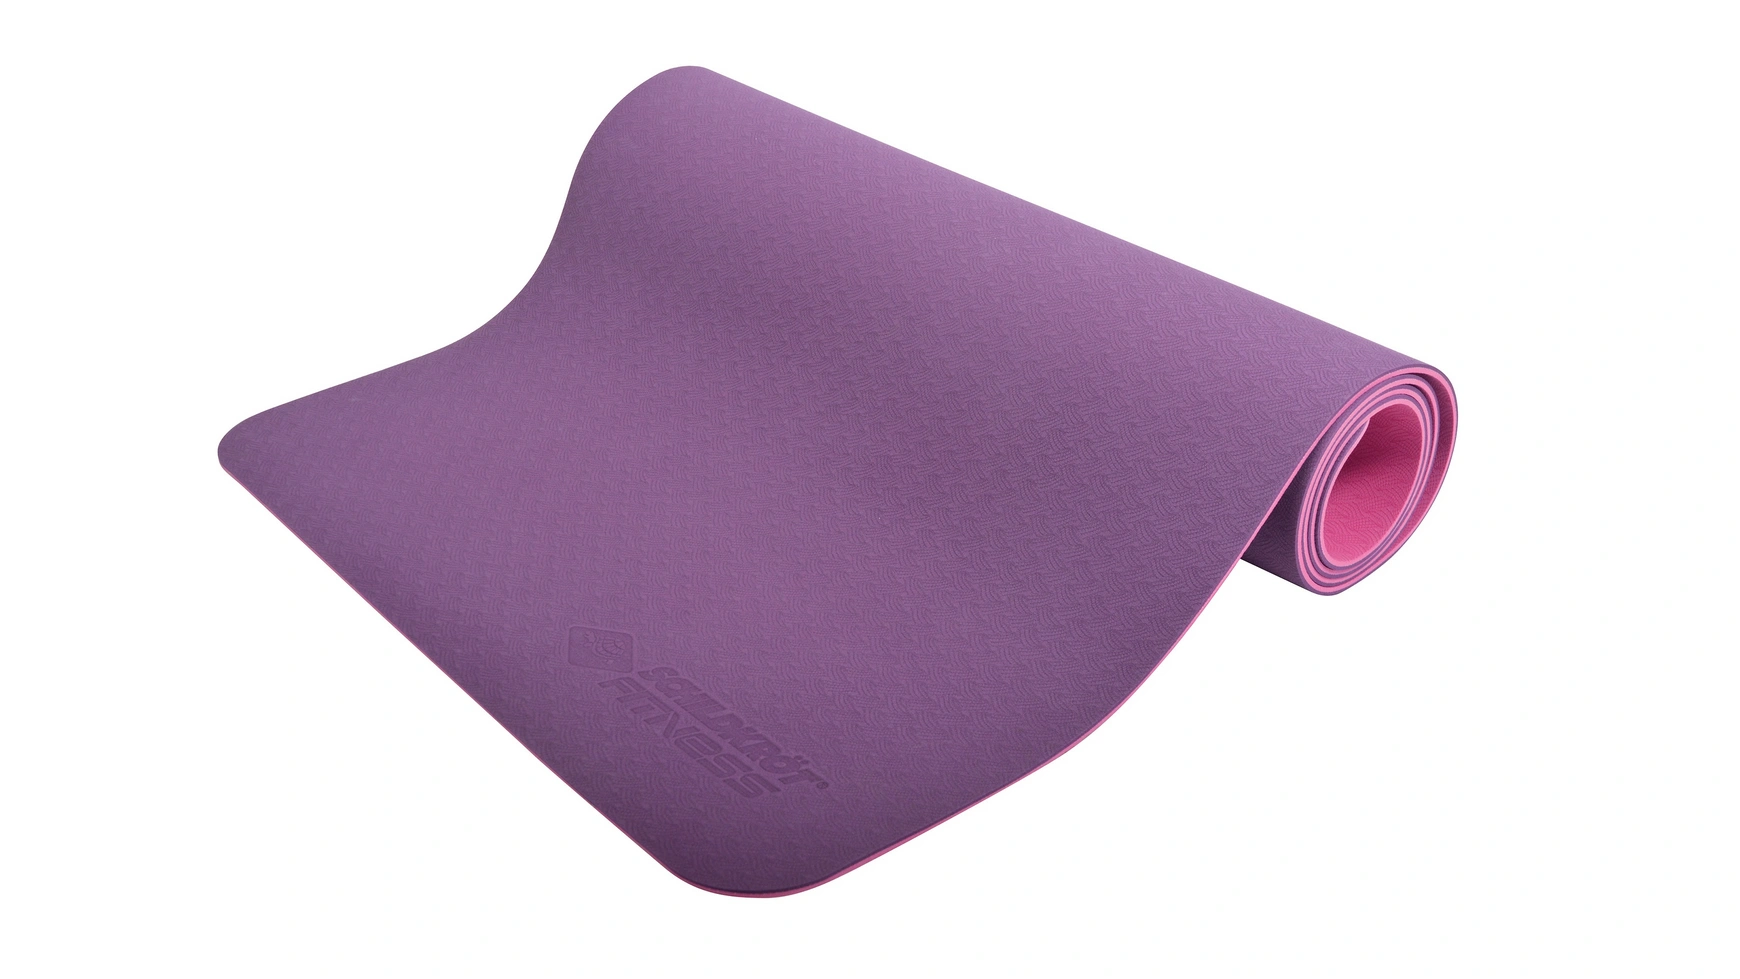 Schildkröt Fitness Коврик для йоги BICOLOR, фиолетово-розовый, 4 мм, без ПВХ, в сумке для переноски фотографии